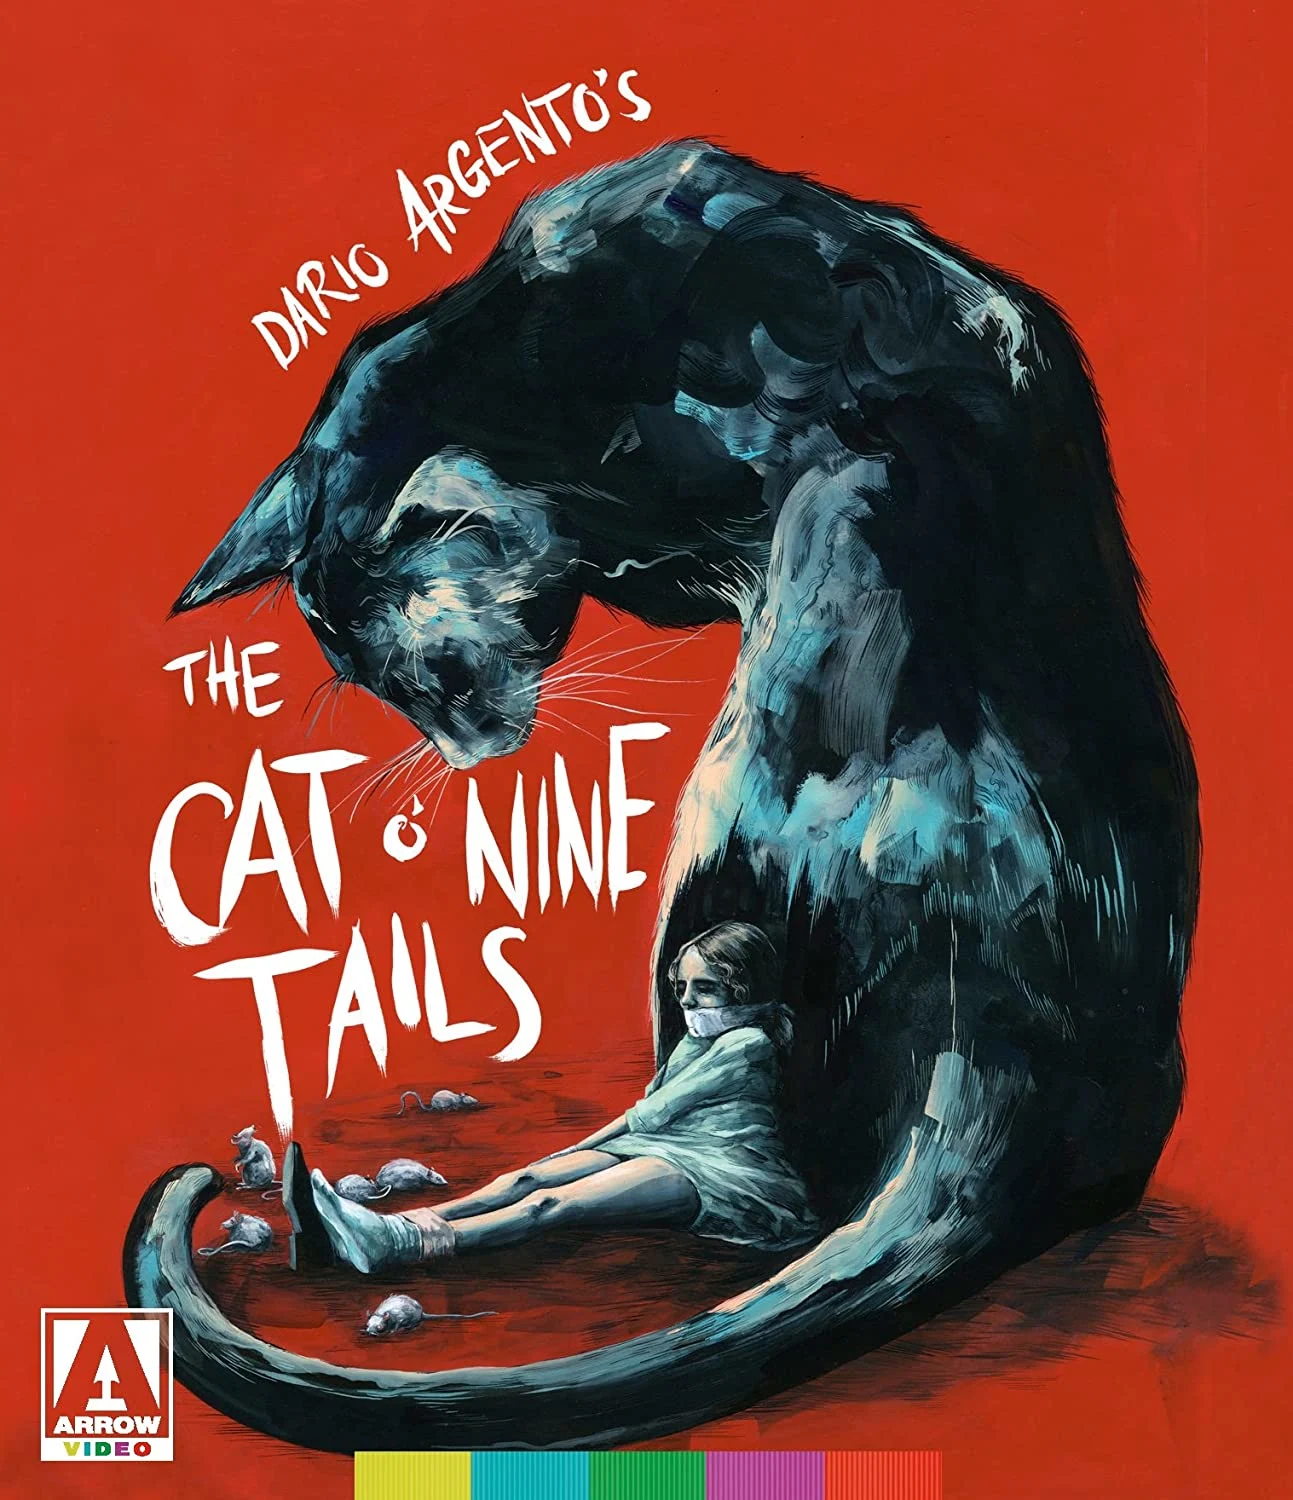 Cat O’ Nine Tails, The (Ltd Ed) (4K-UHD) on MovieShack